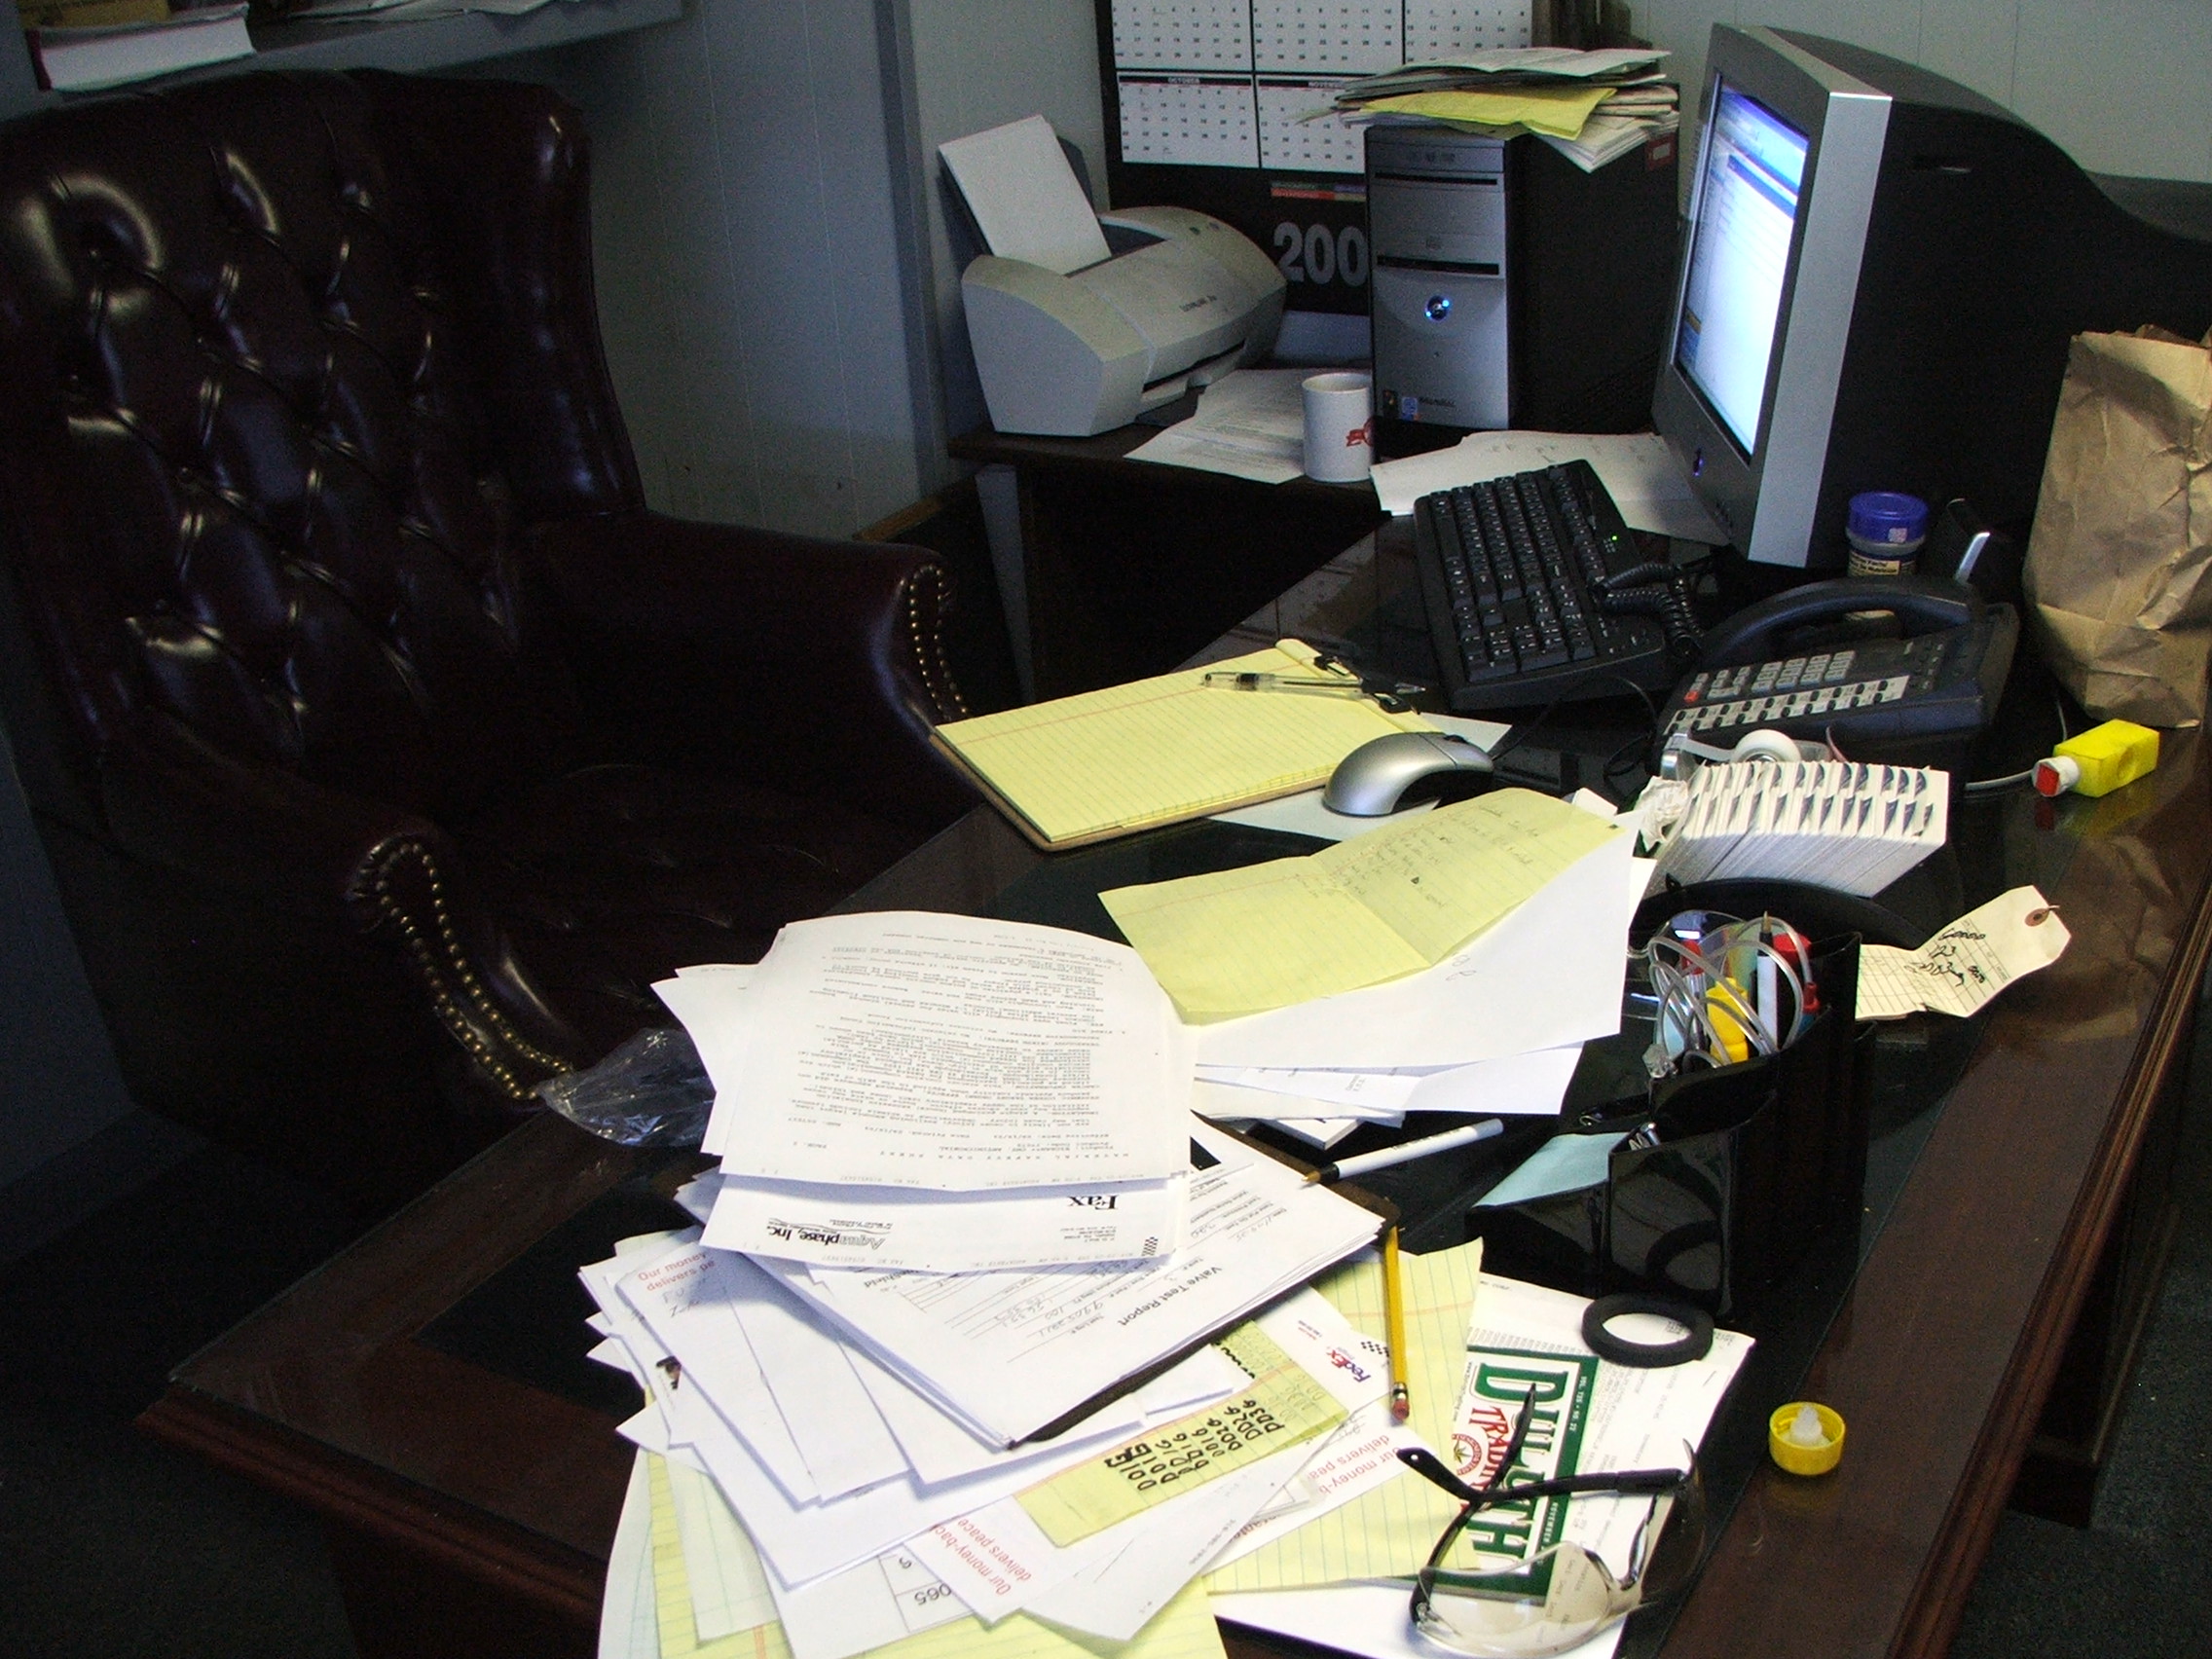 Messy desk full of clutter